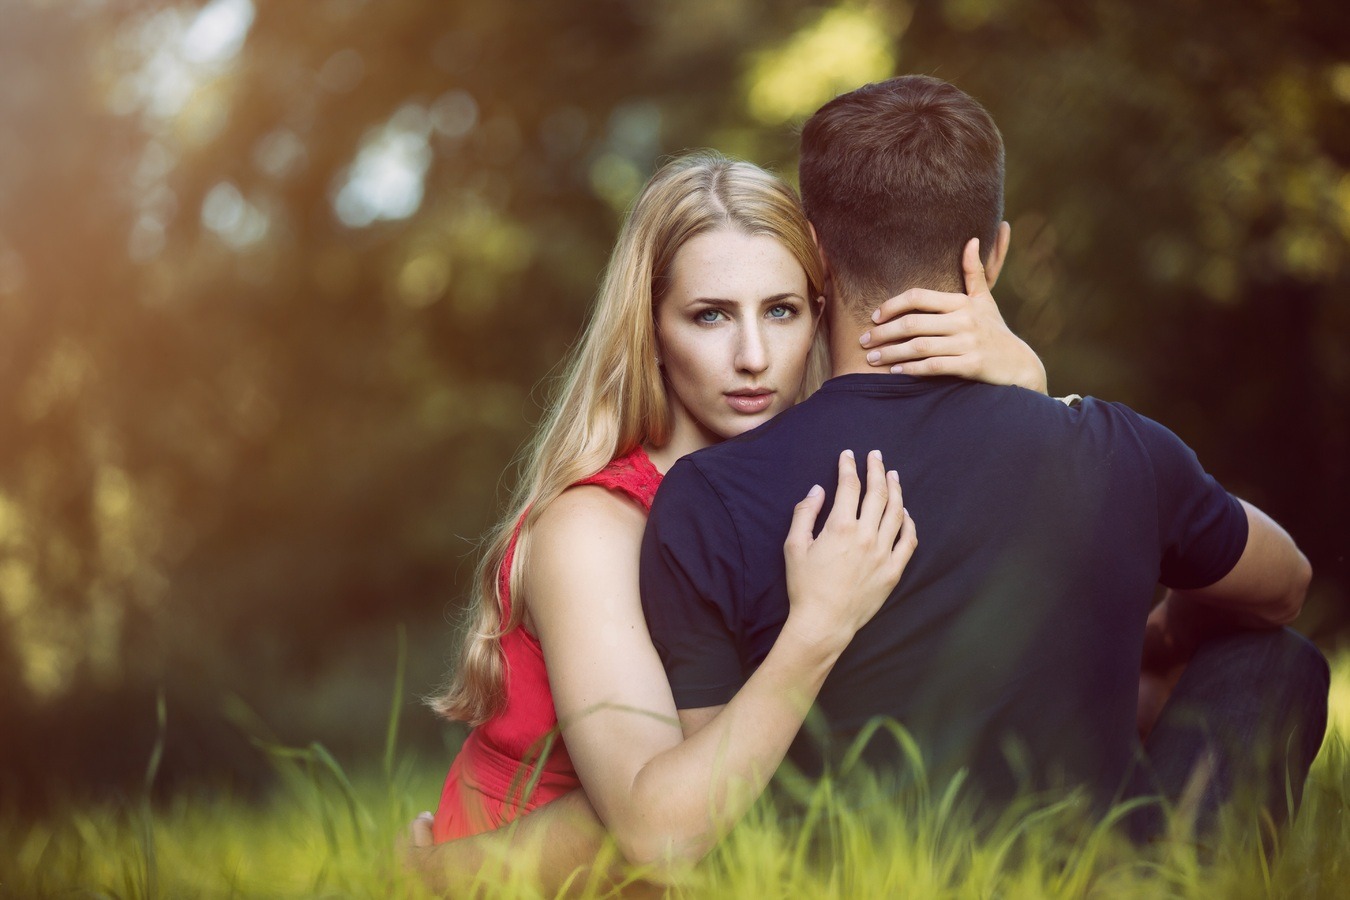 Вы сейчас просматриваете 8 скрытых проблем в отношениях, которые могут разрушить ваш брак